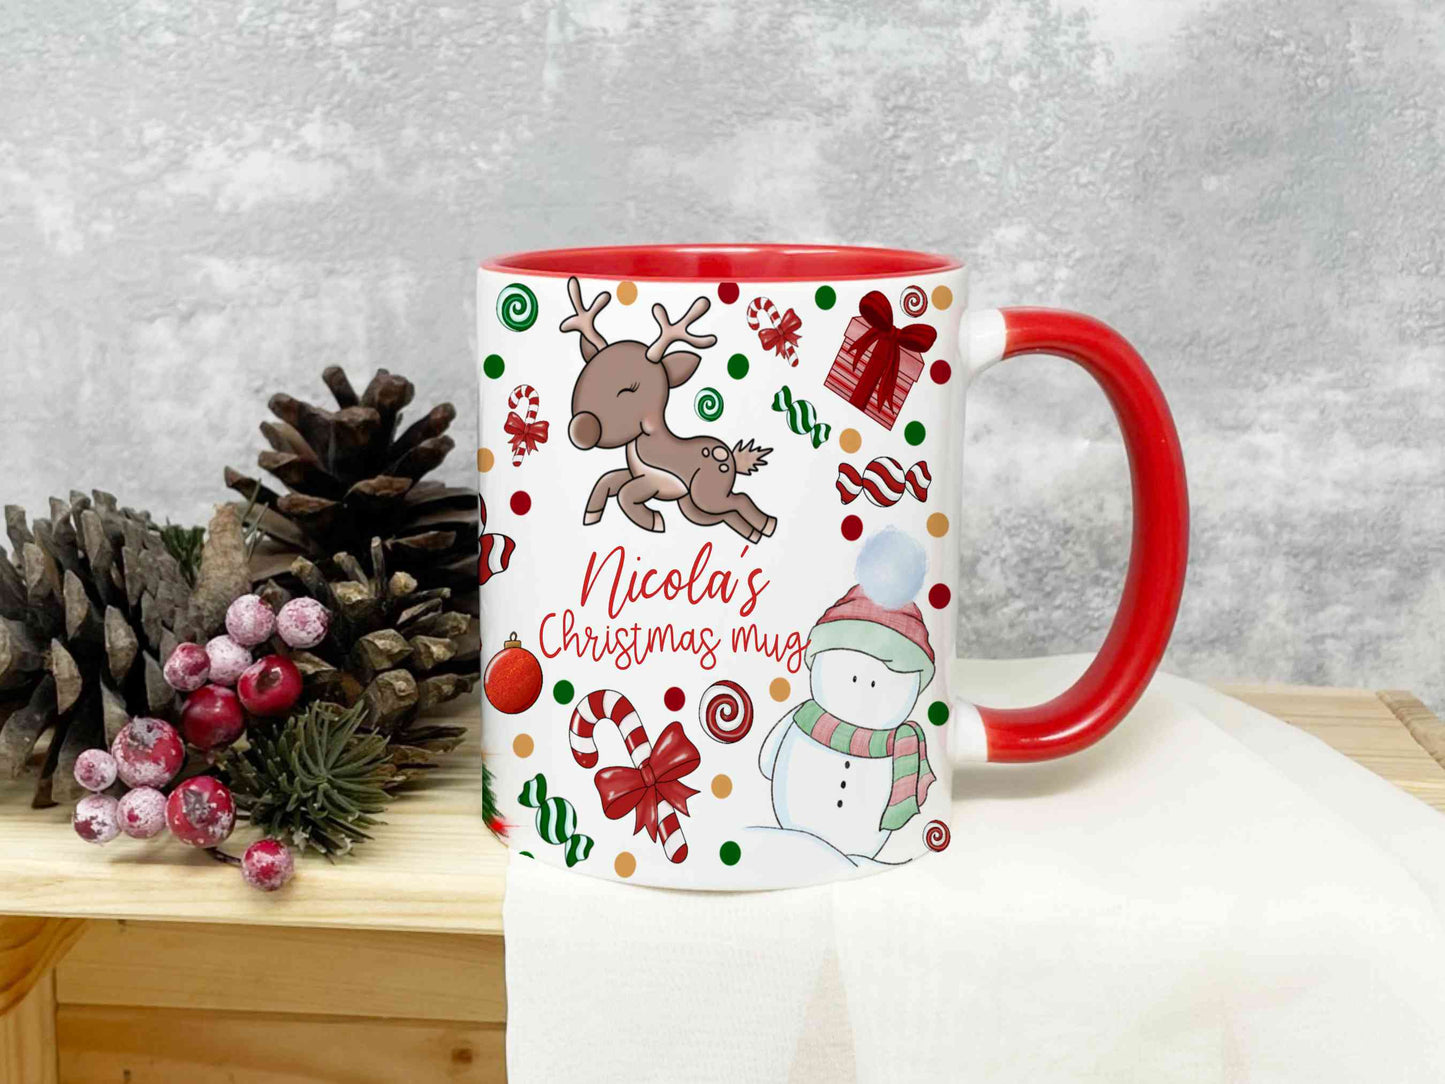 Christmas themed mug